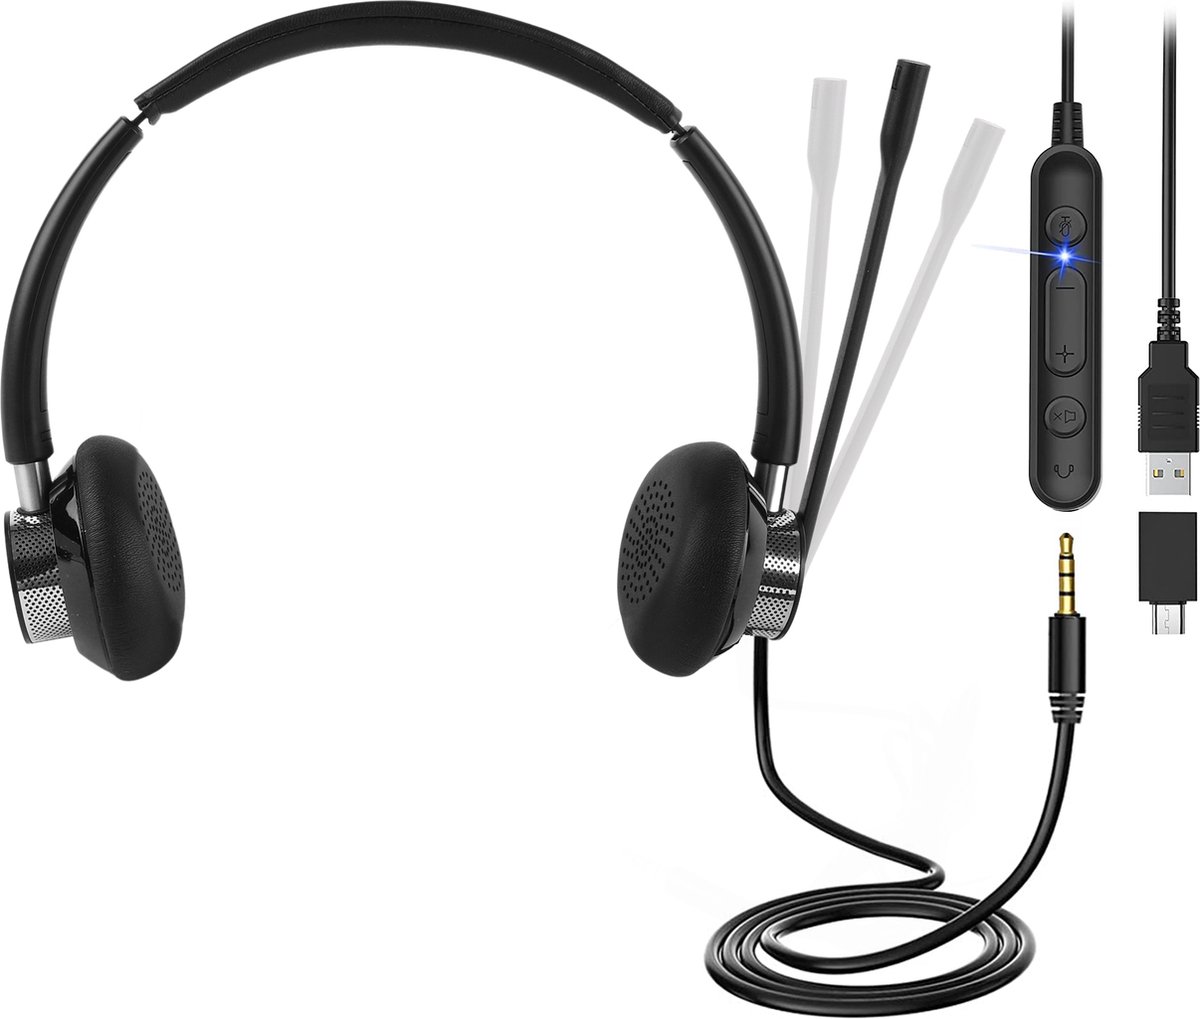 Headset met Microfoon - Koptelefoon met Microfoon - Headset - Koptelefoon met Microfoon voor Laptop - Laptop - Telefoon - PC - Geruisloos - Microfoon - Koptelefoon - USB - 3.5mm